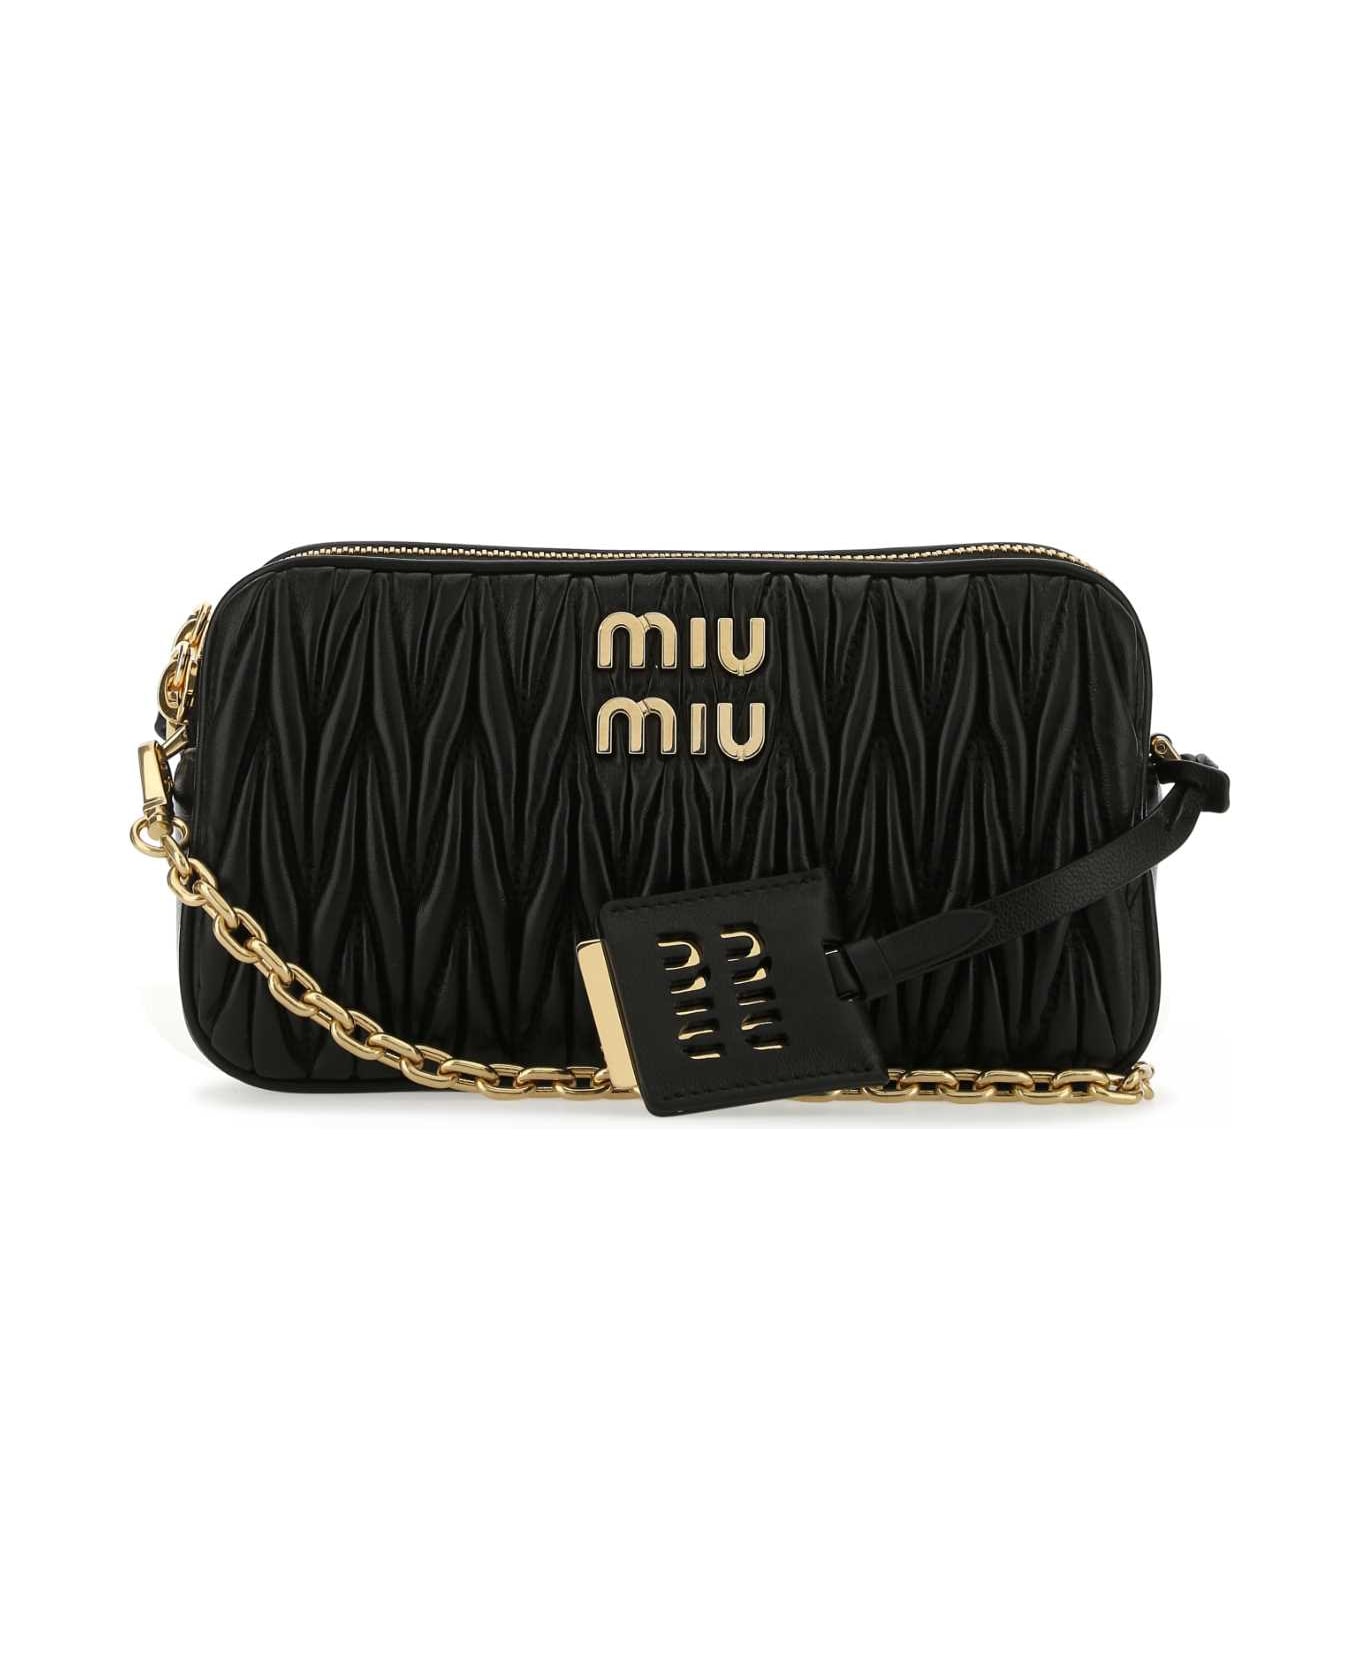 Miu Miu Black Nappa Leather Mini Crossbody Bag - F0002